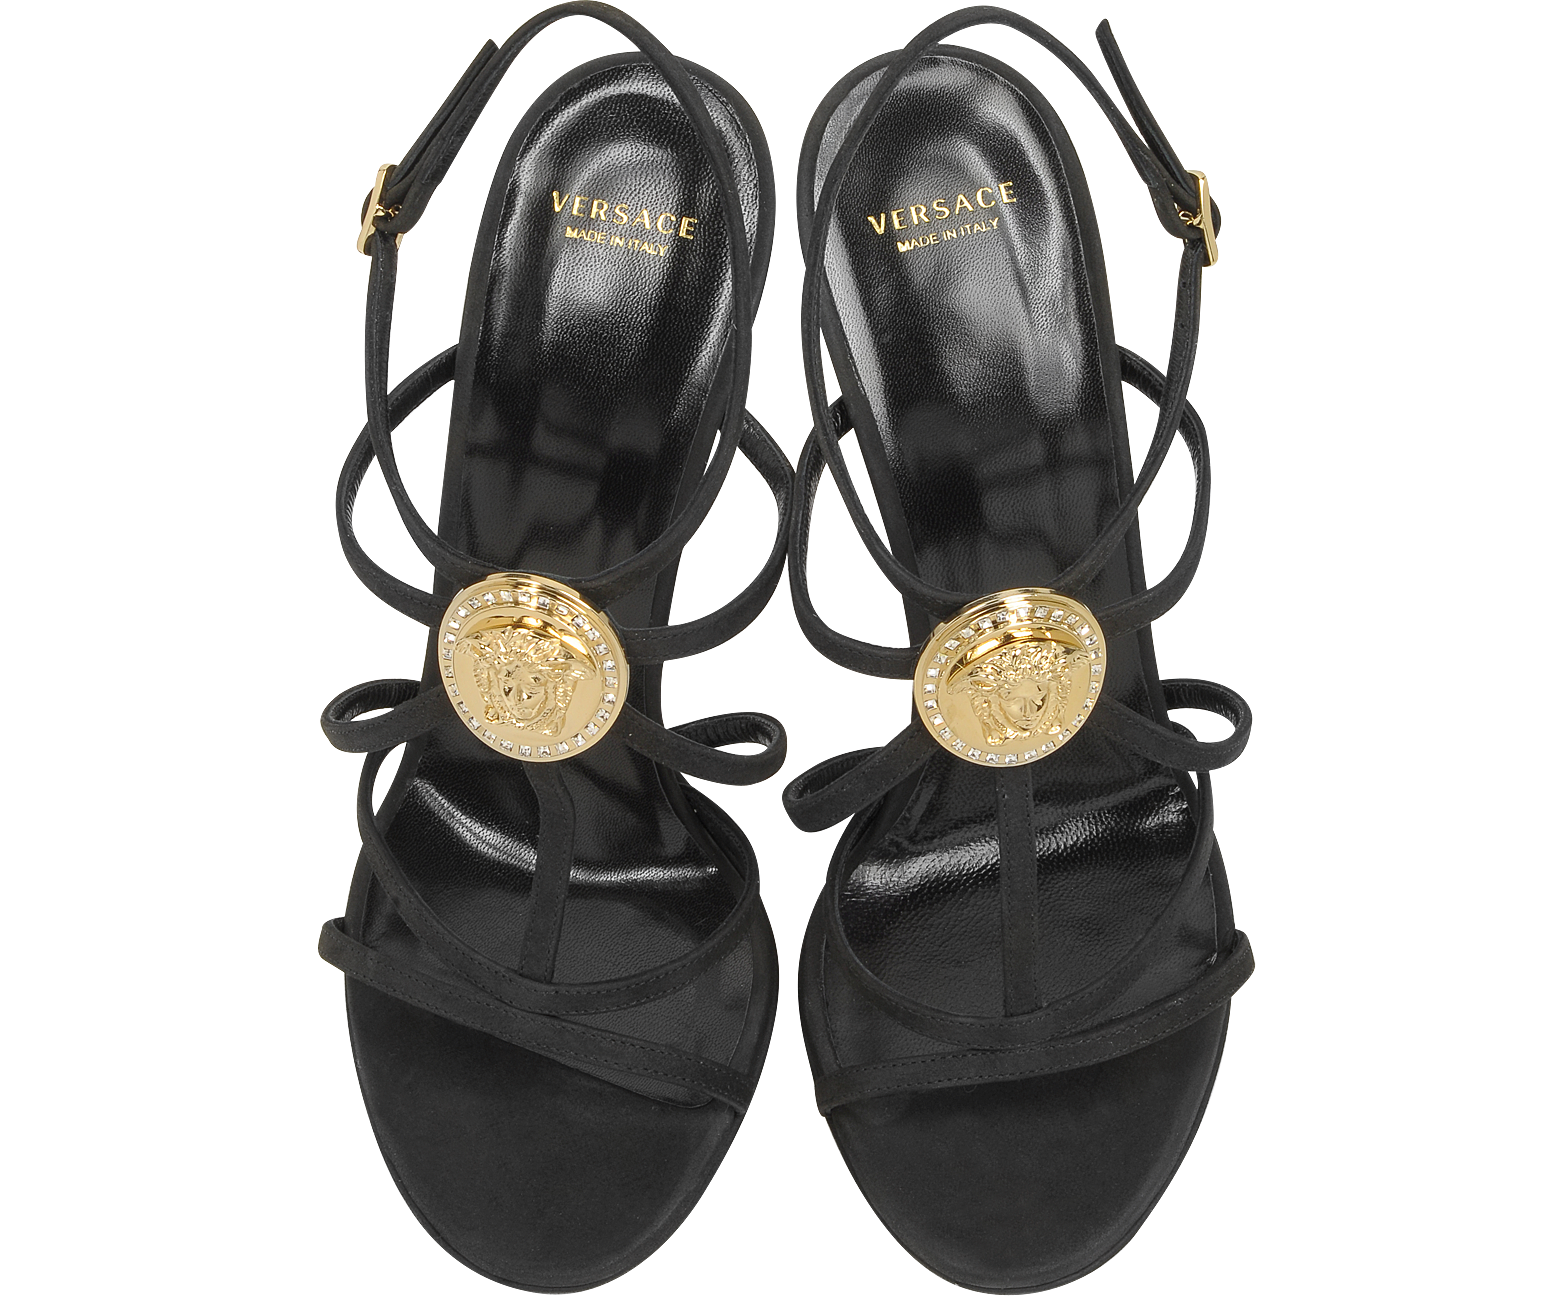 Versace Medusa Platform Sandals 36 IT/EU at FORZIERI